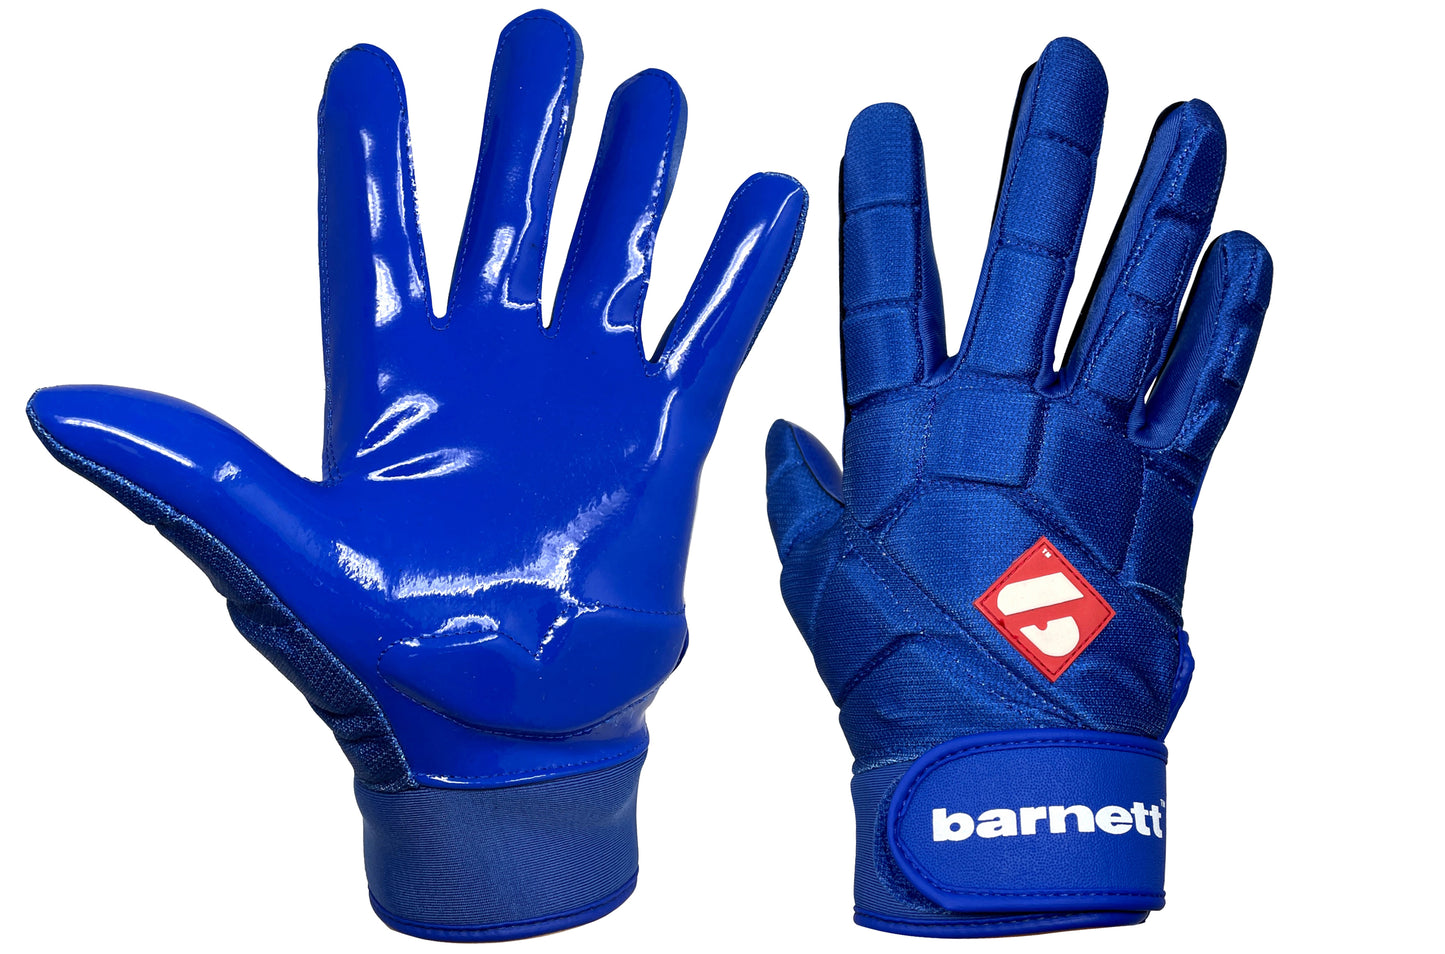 FKG-03 Blue High Level Linebacker Football Gloves, LB, RB, TE